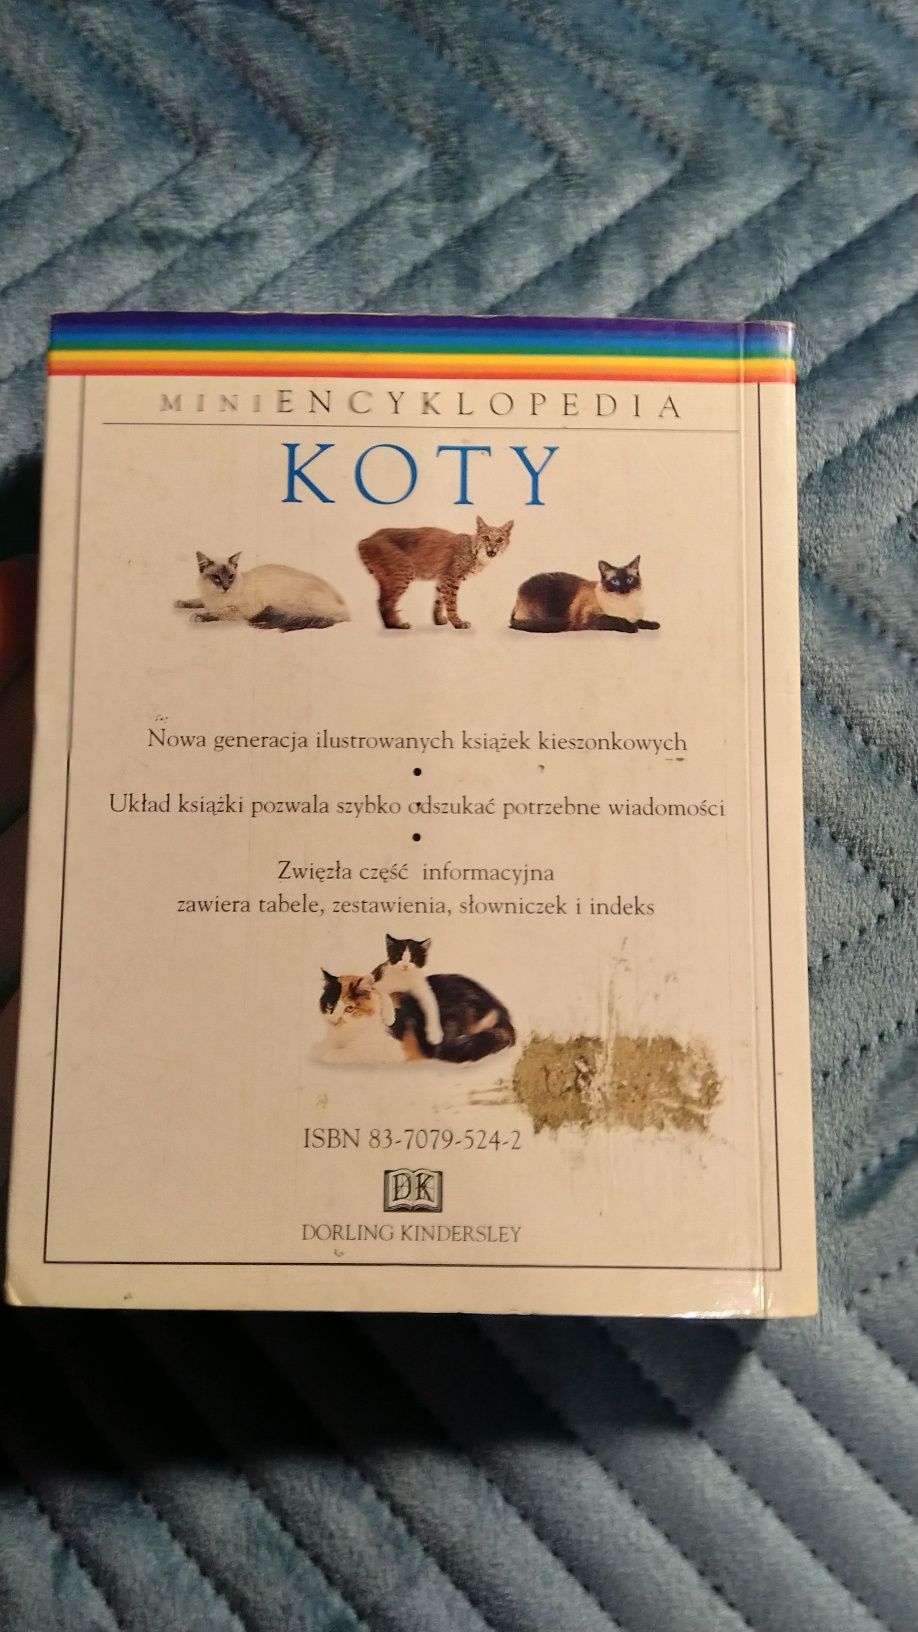 MiniEncyklopedia Koty